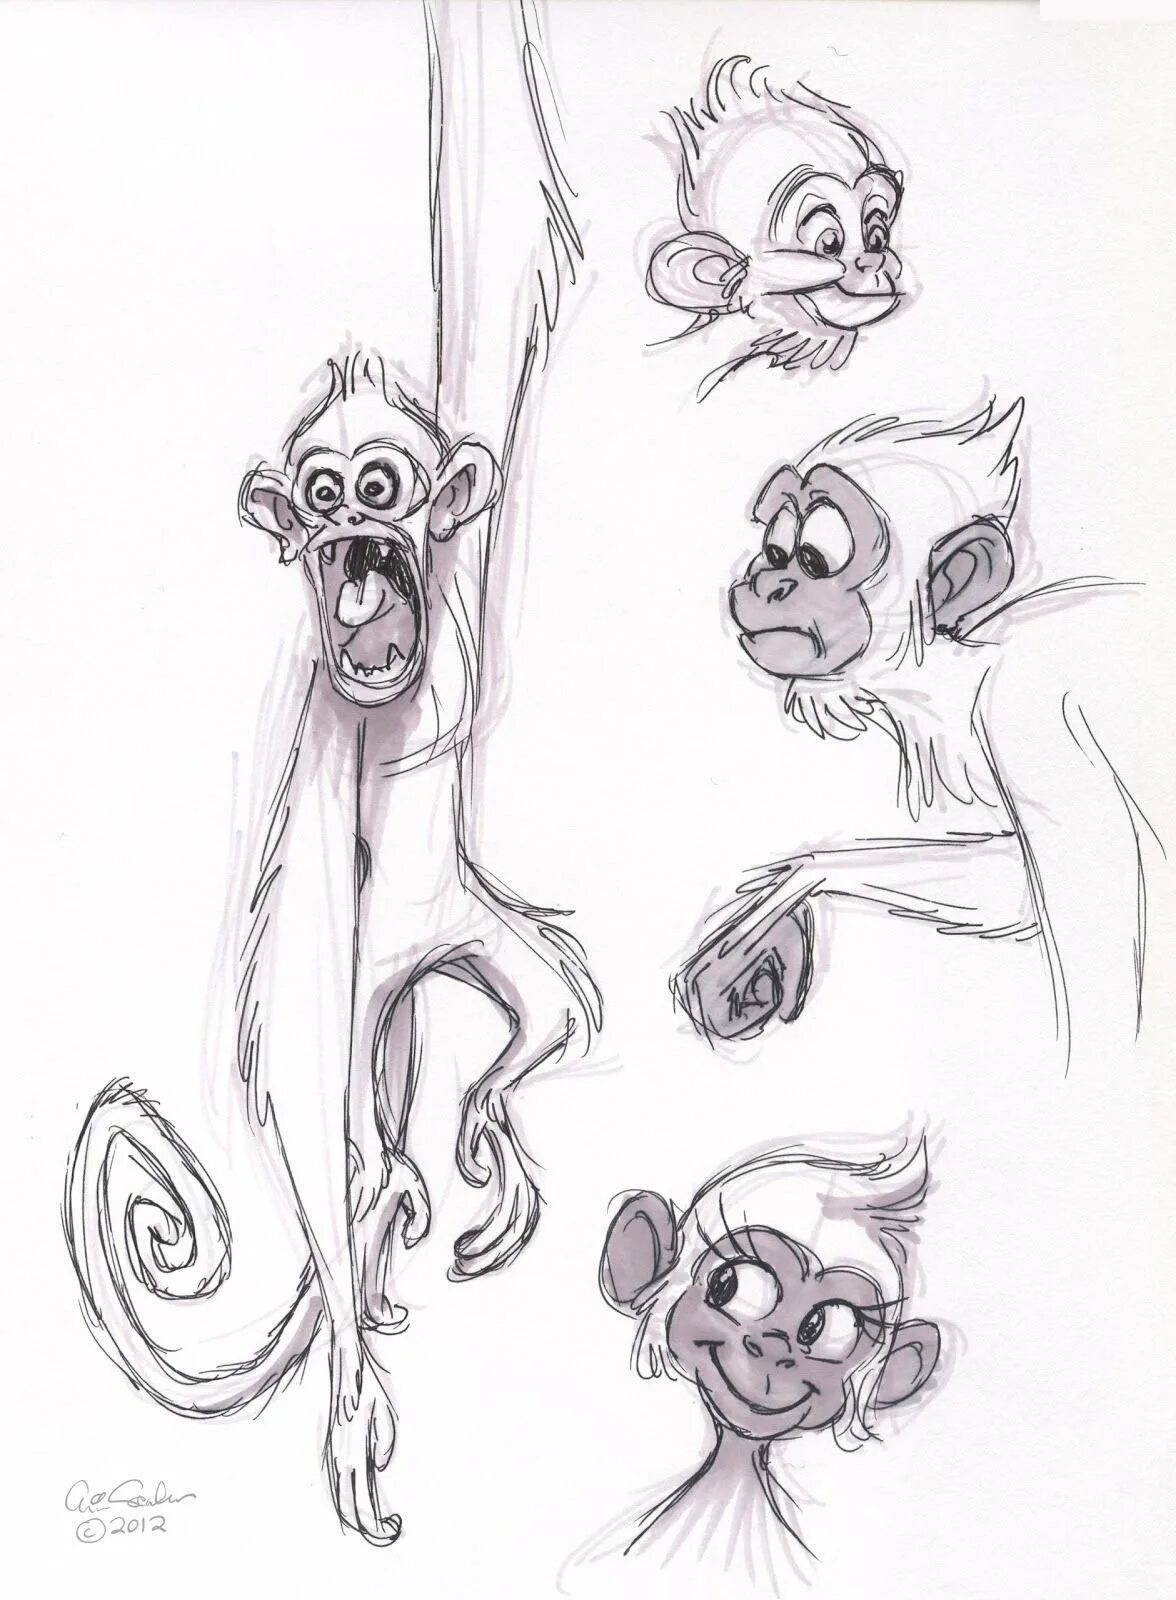 Рисунок обезьяны карандашом. Обезьяна рисунок карандашом. Рисунок бебезяны карандашем. Обезьяна рисунок Каран. Обезьяна эскизы карандашом.